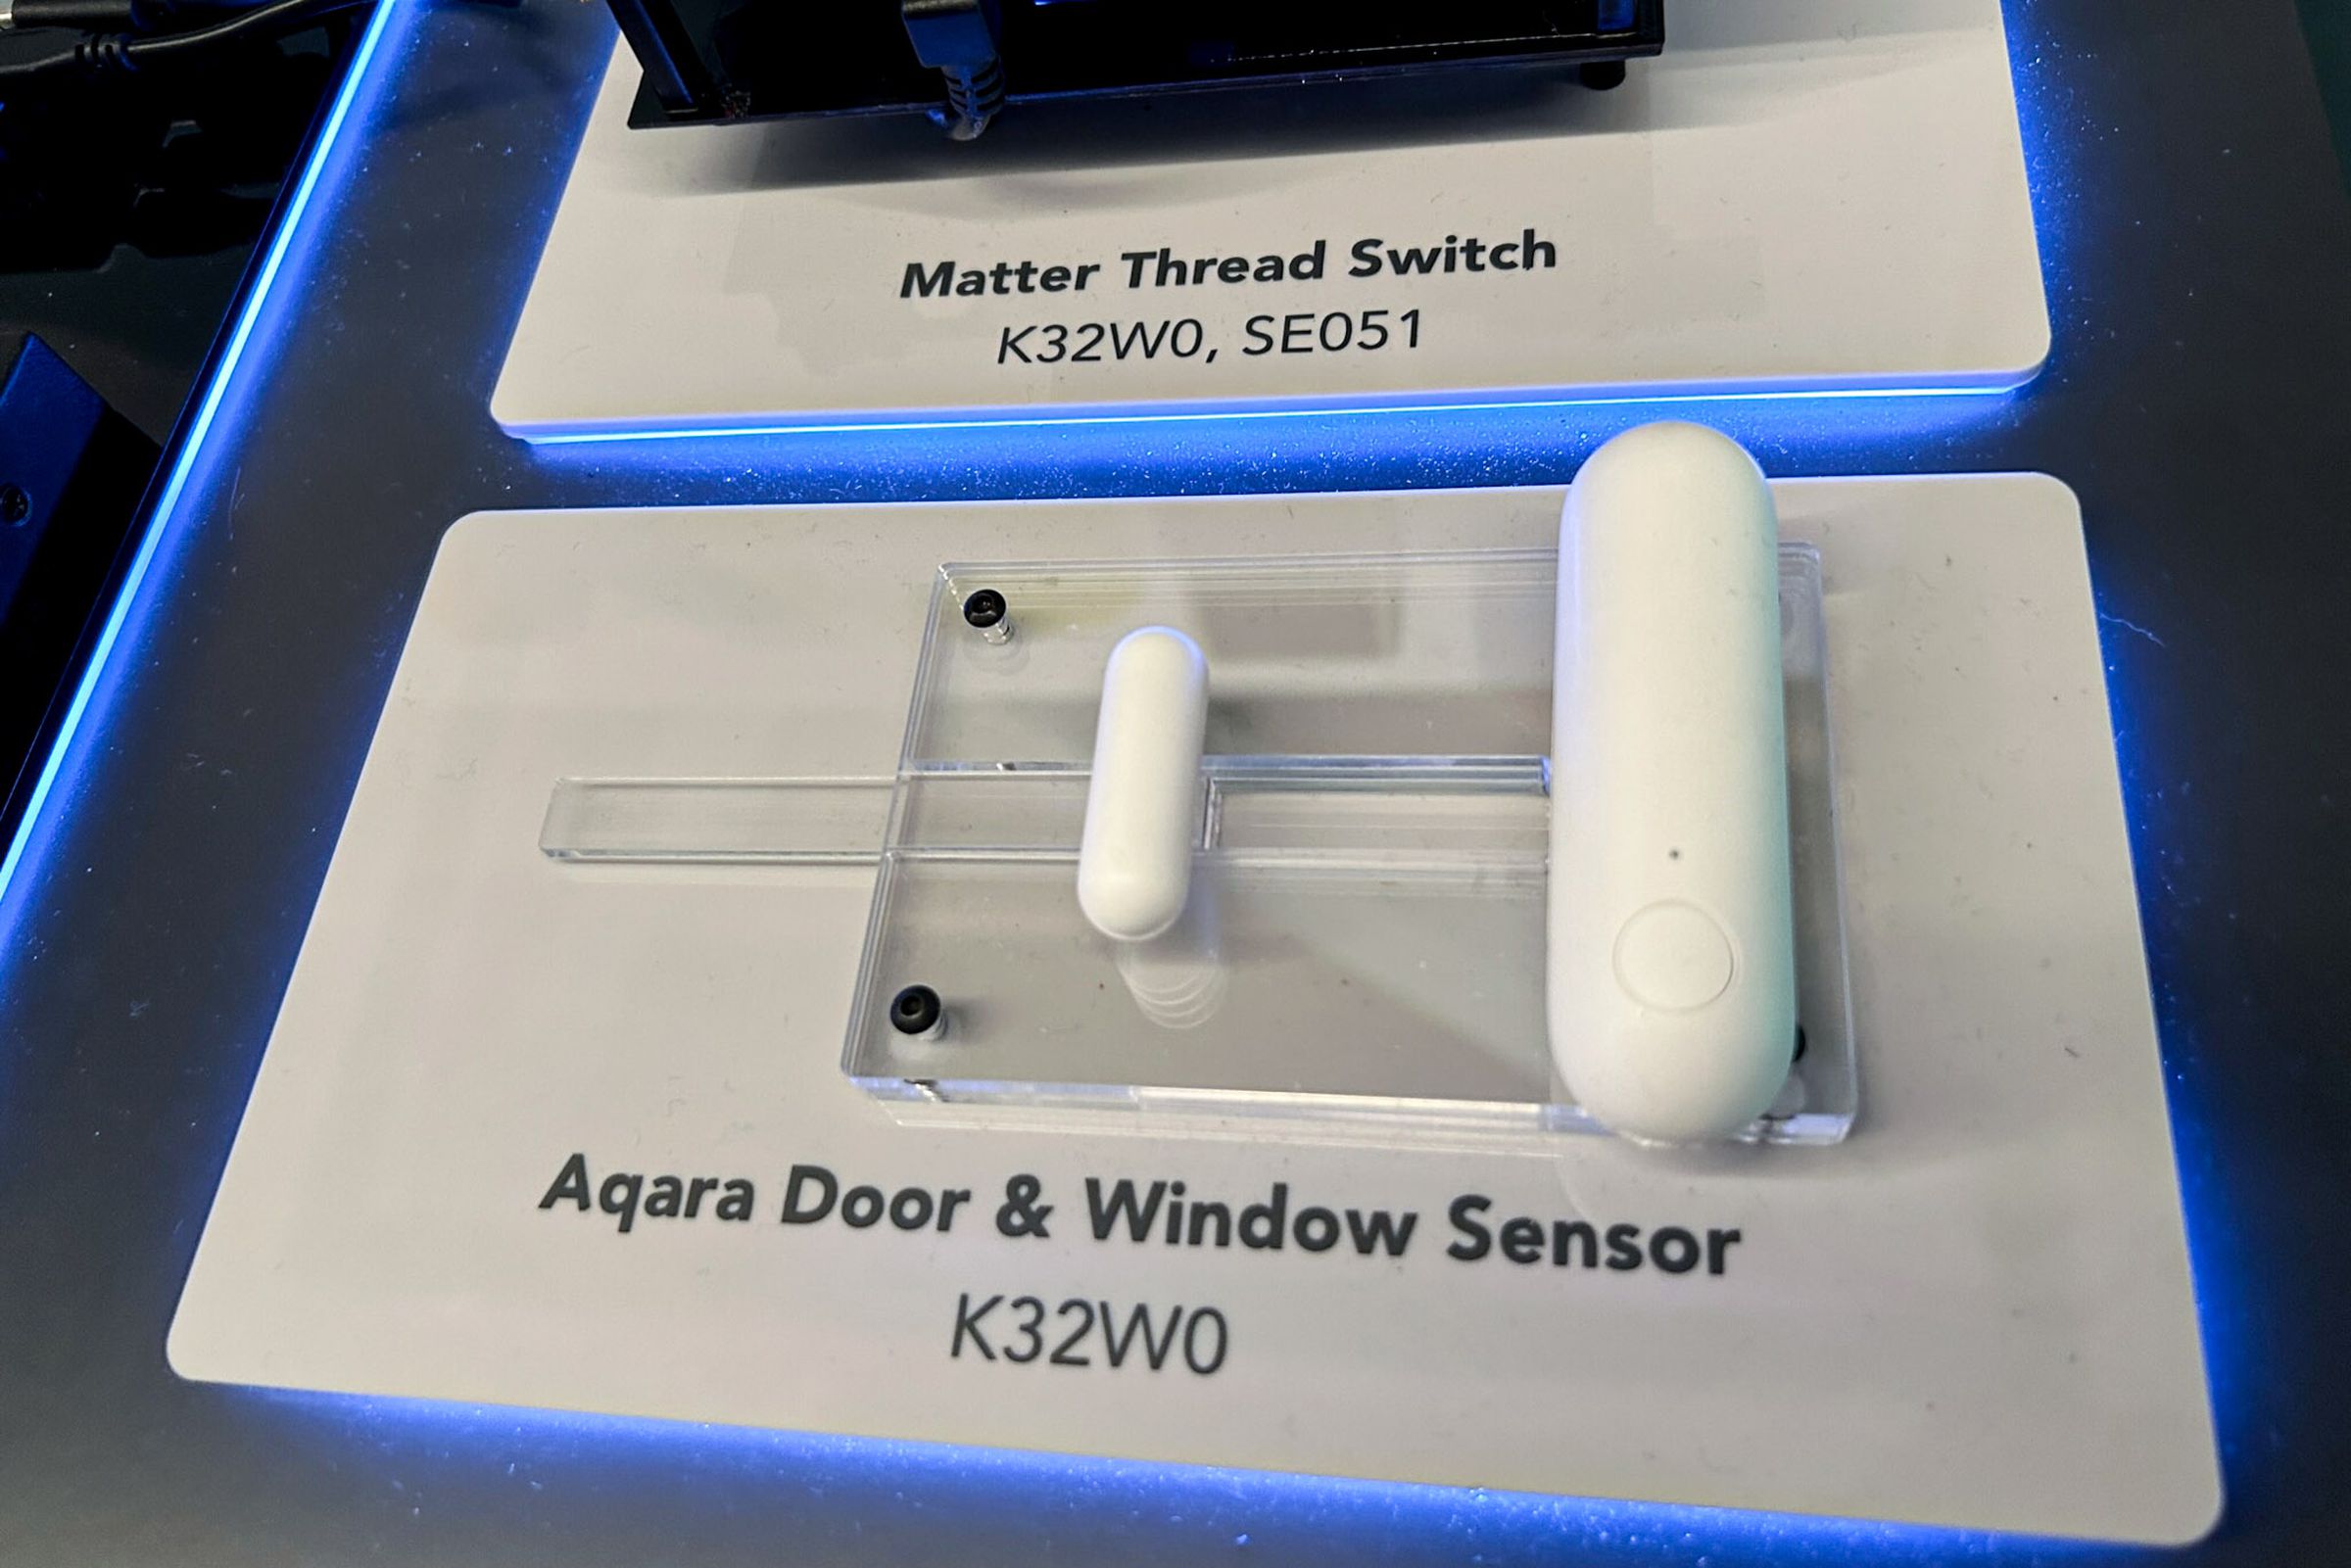 Yeni İplik tabanlı Aqara P2 Kapı ve Pencere Sensörünün bir prototipi, Matter etkinliğindeki bir NXP demosunun parçasıydı.